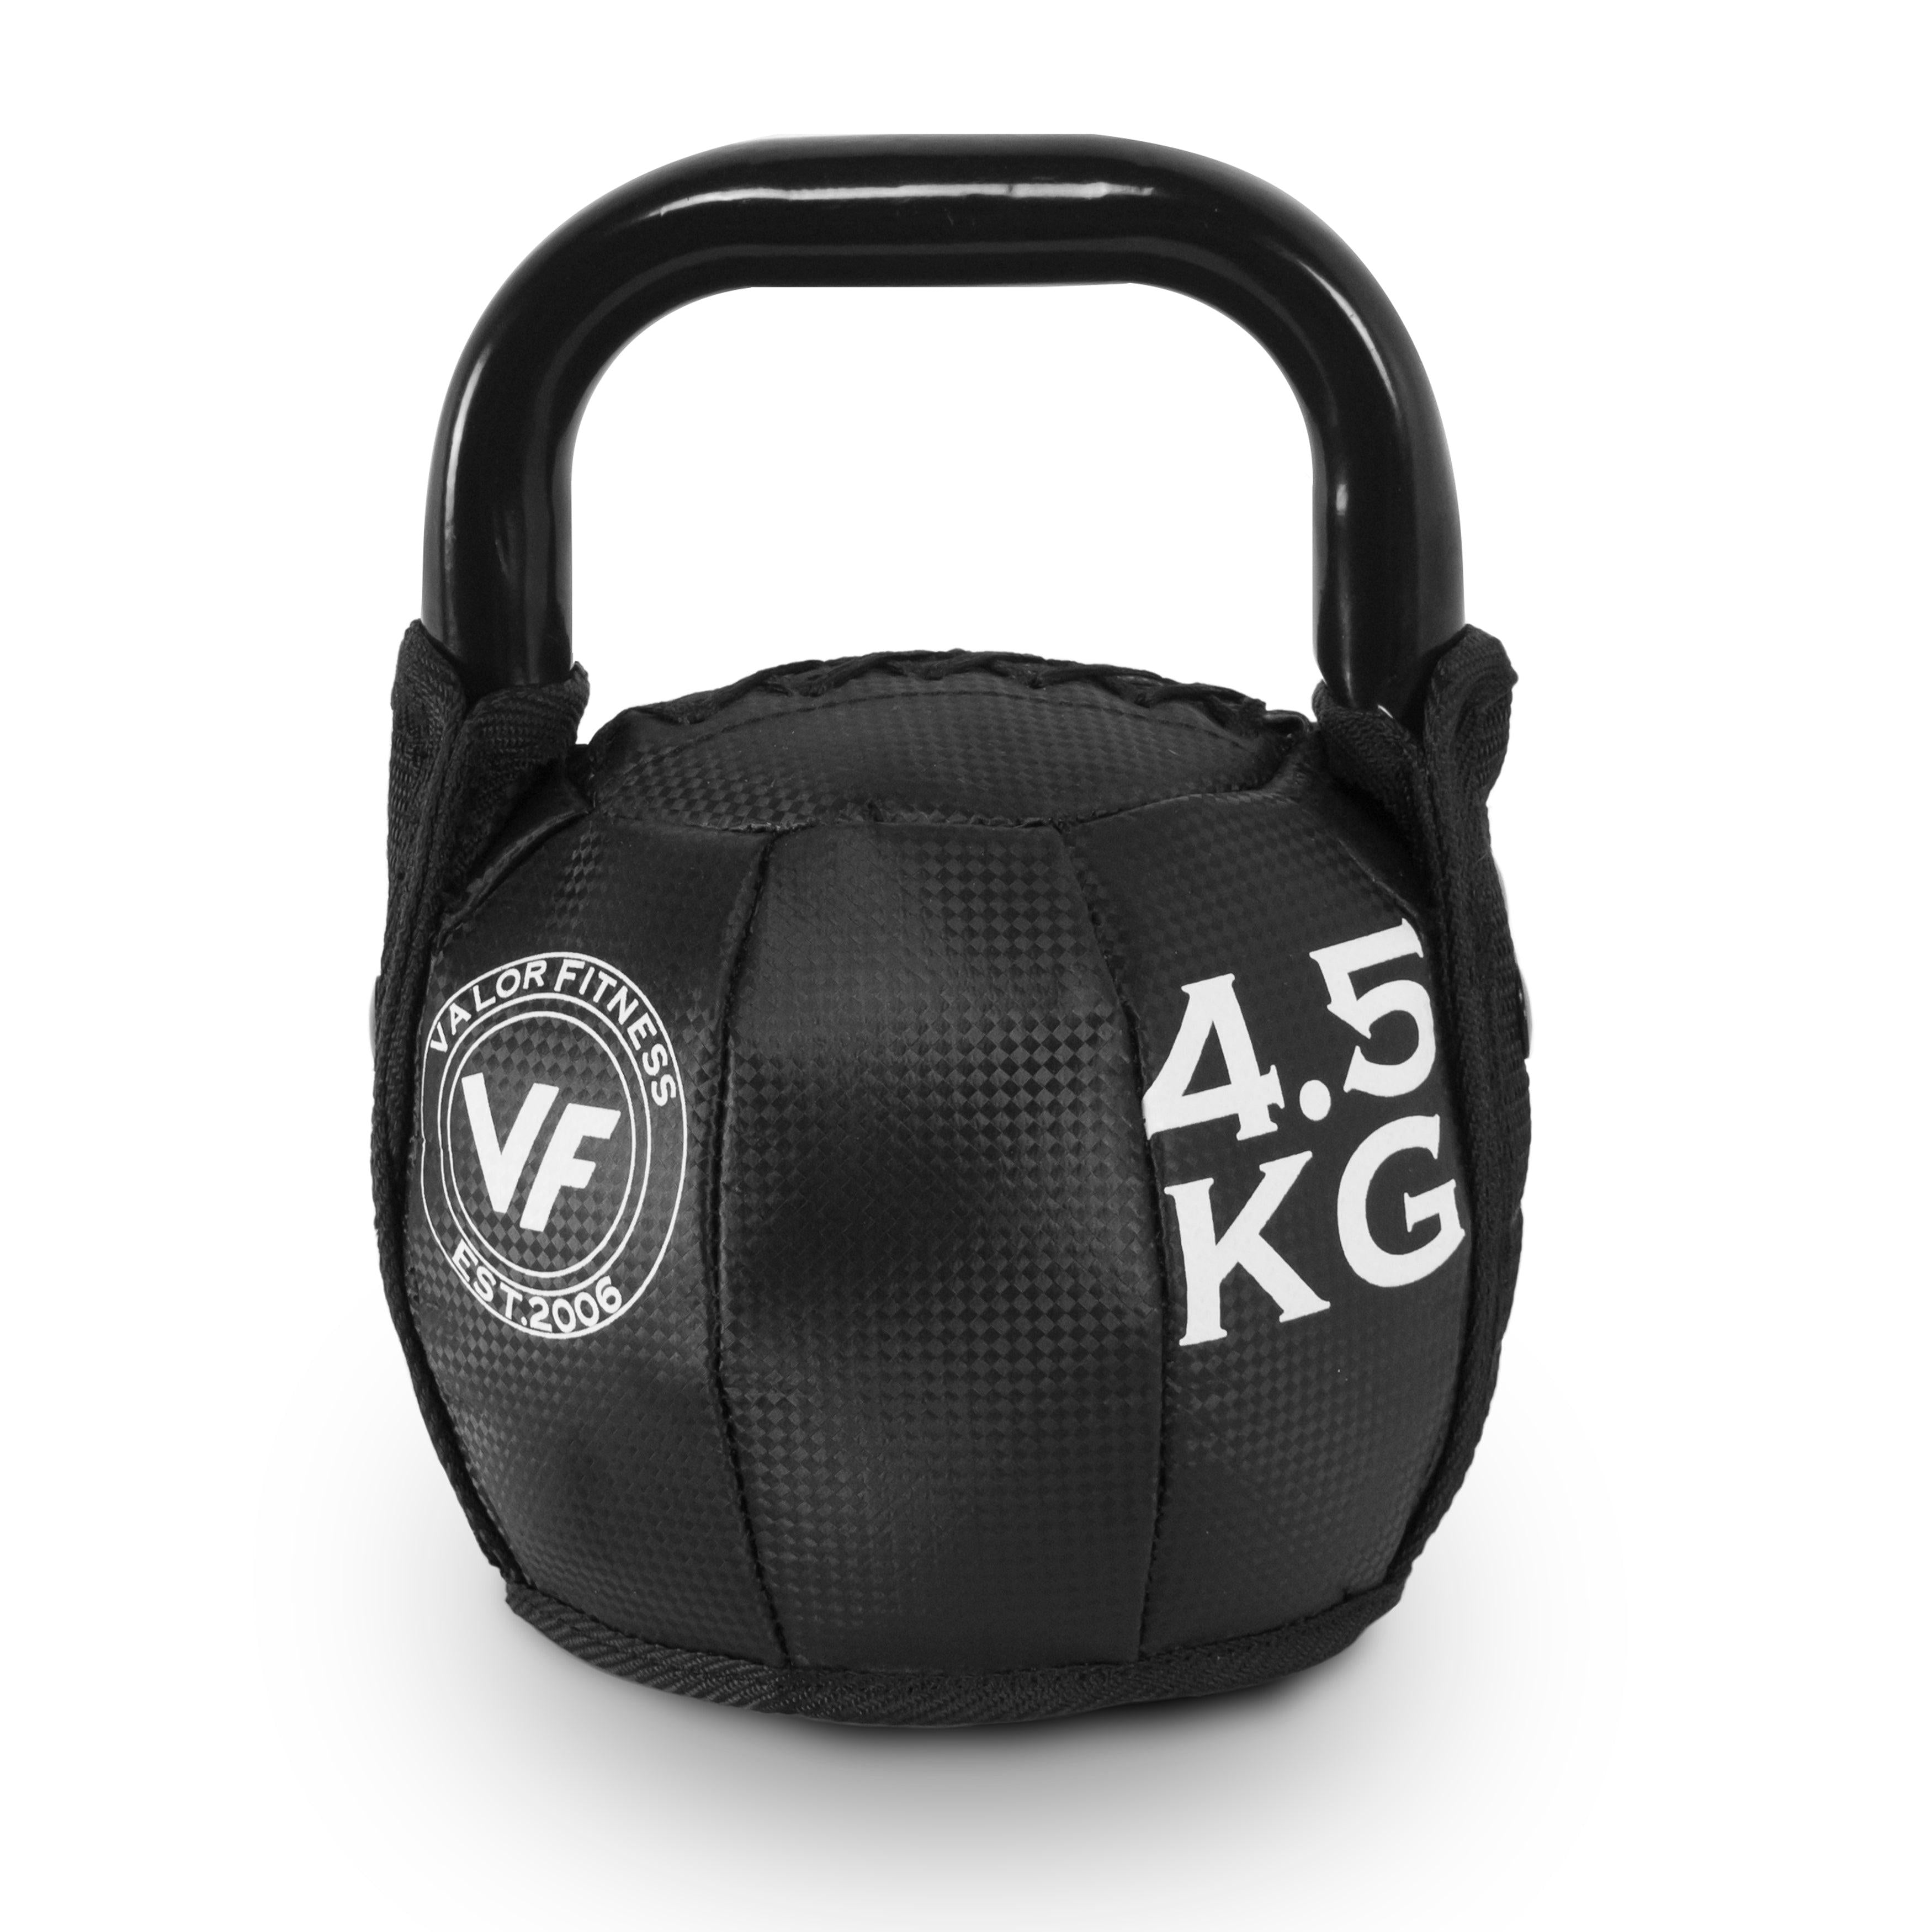 Valor Fitness Kettlebell 10-35lb) - Soft (Size